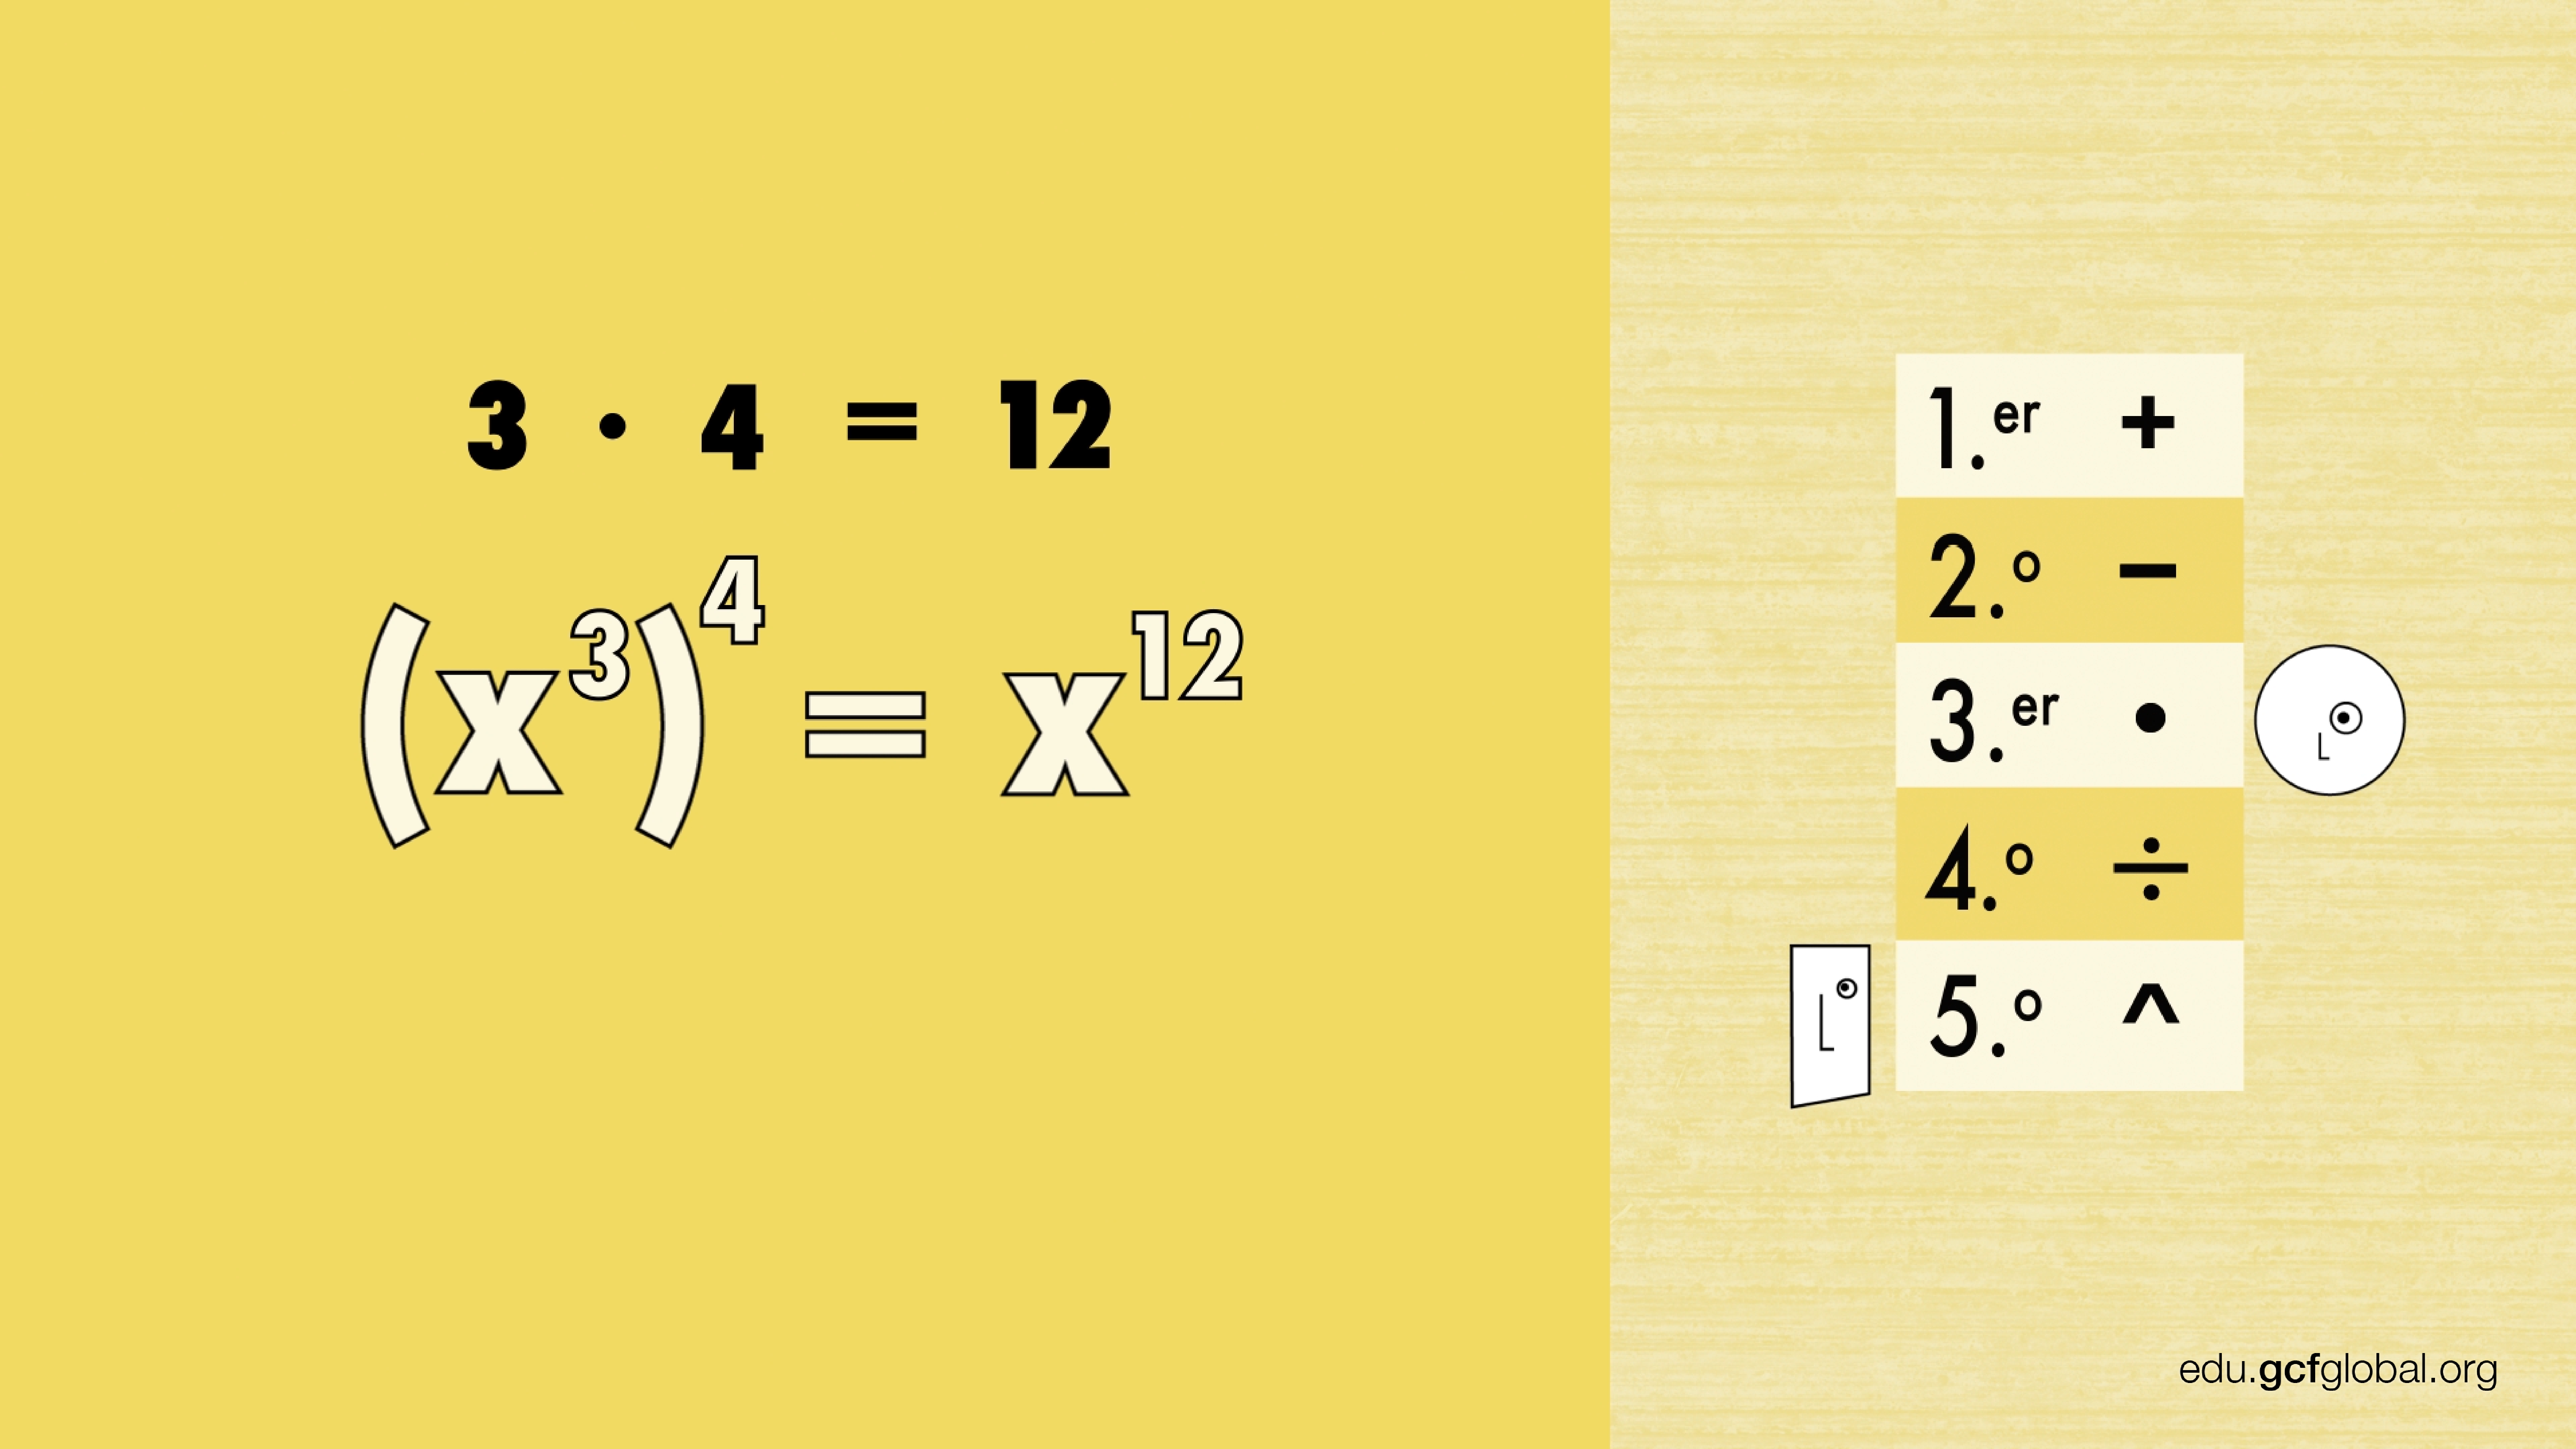 Exemplo de como elevar uma potencia a outro expoente: (x3)4, com resultado de x12.